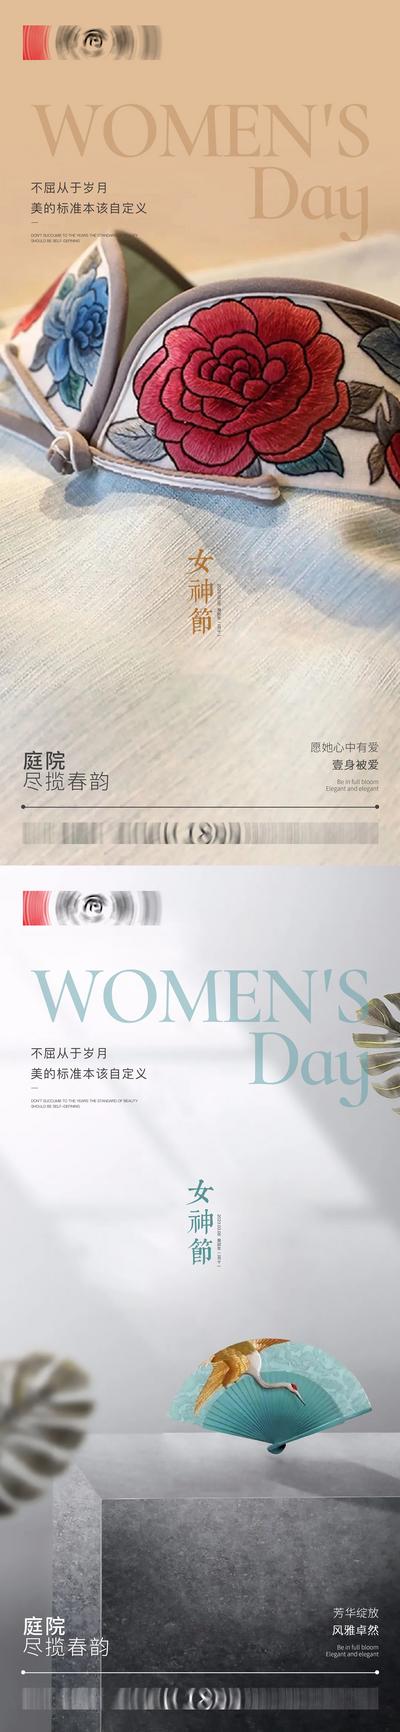 【南门网】海报 地产 公历节日 妇女节 女神节 新中式 肌理 旗袍 折扇